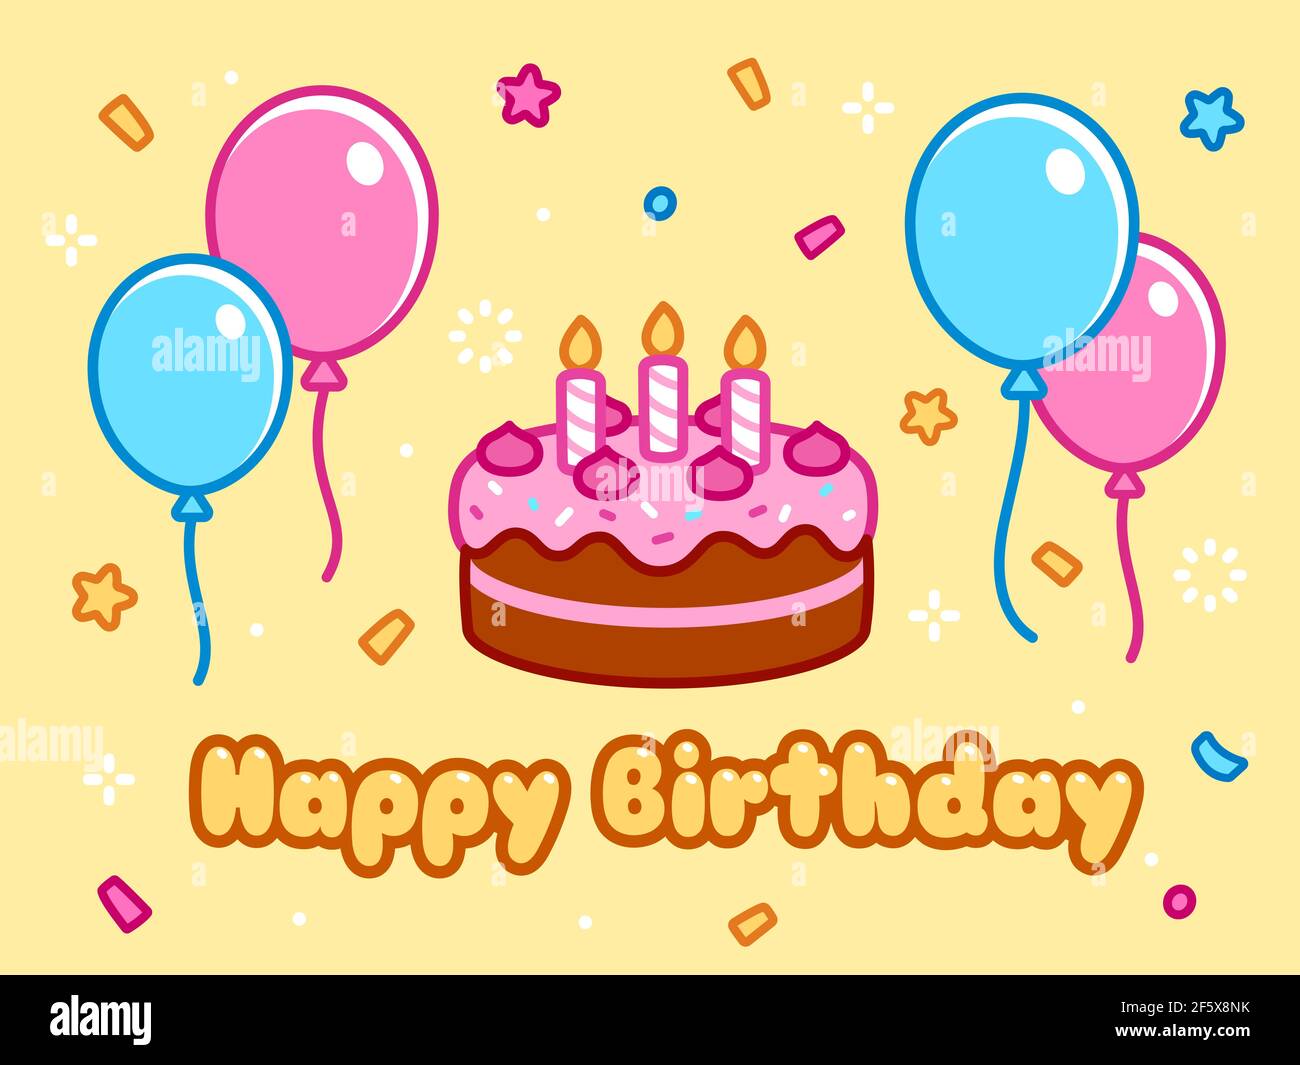 Happy Birthday Grußkarte mit Geburtstagskuchen, Ballons, Konfetti und Cartoon-Text. Cute Doodle Zeichnung, Vektor-Illustration. Stock Vektor